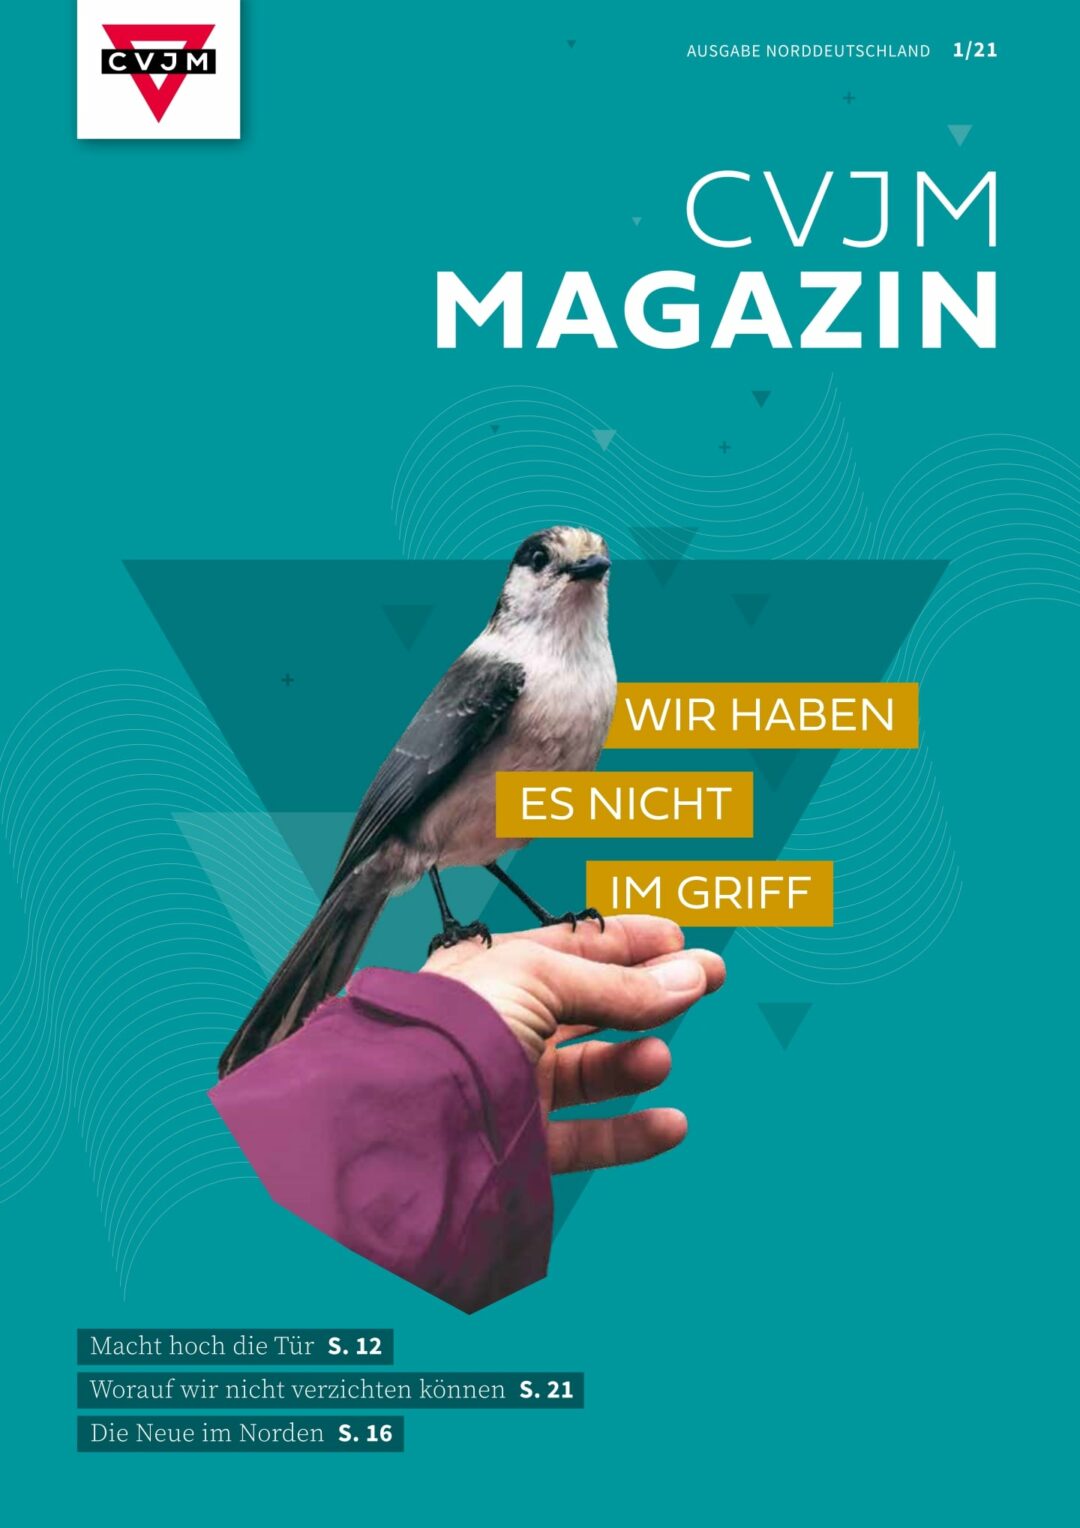 CVJM Magazin Norddeutschland 1/2021